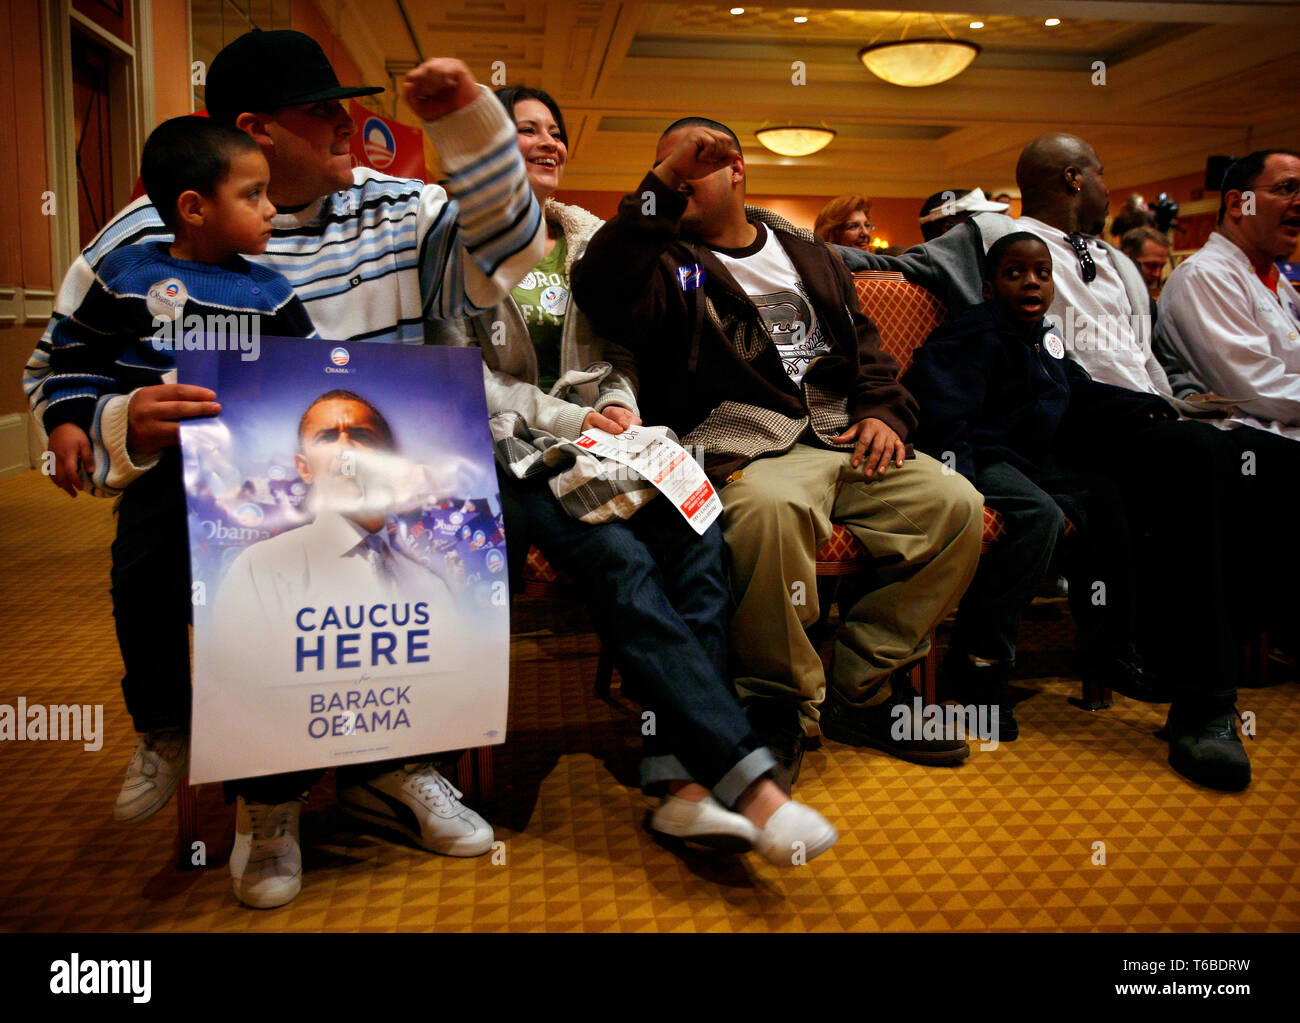 Mitarbeiter im Caesar Casino und Hotel an Caucus in Ihrem Hotel. Quincy Smith (7), neben seinem Vater Mark, ist mit Blick auf die Sanchez Familie (mit Poster), da Sie alle unterstützenden Obama an der Caucus. Stockfoto